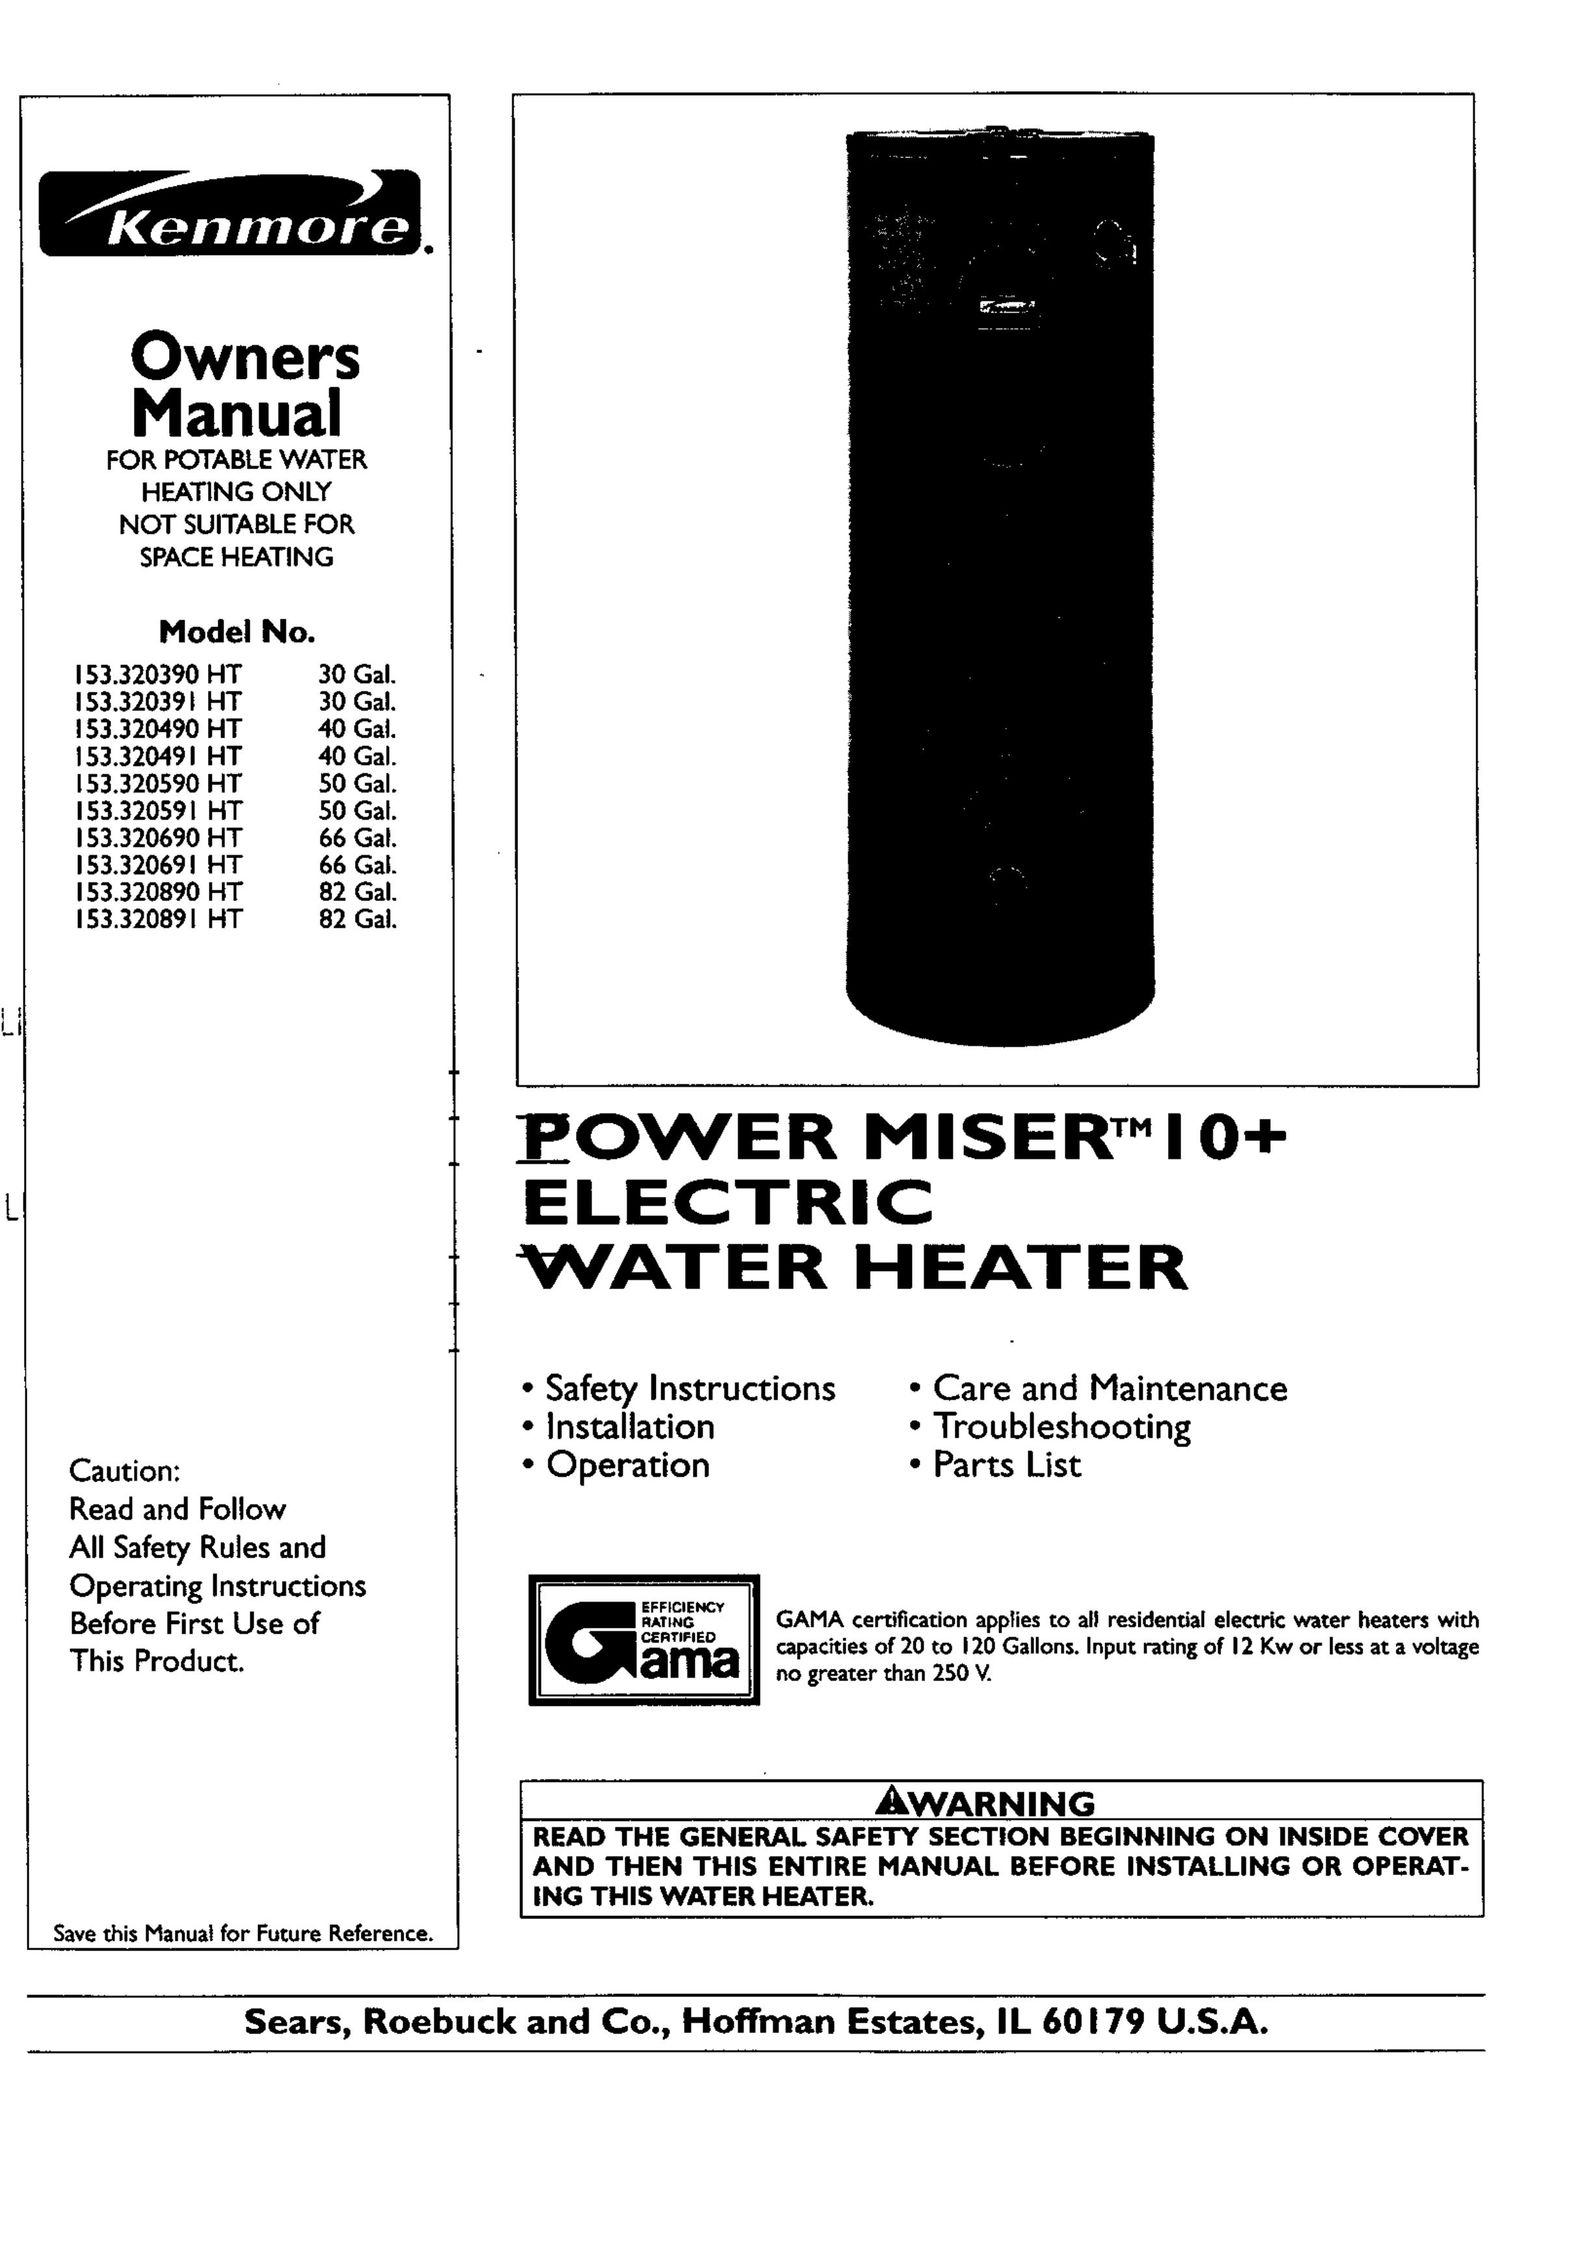 Kenmore 153.320590 HT 50 GAL. Water Heater User Manual